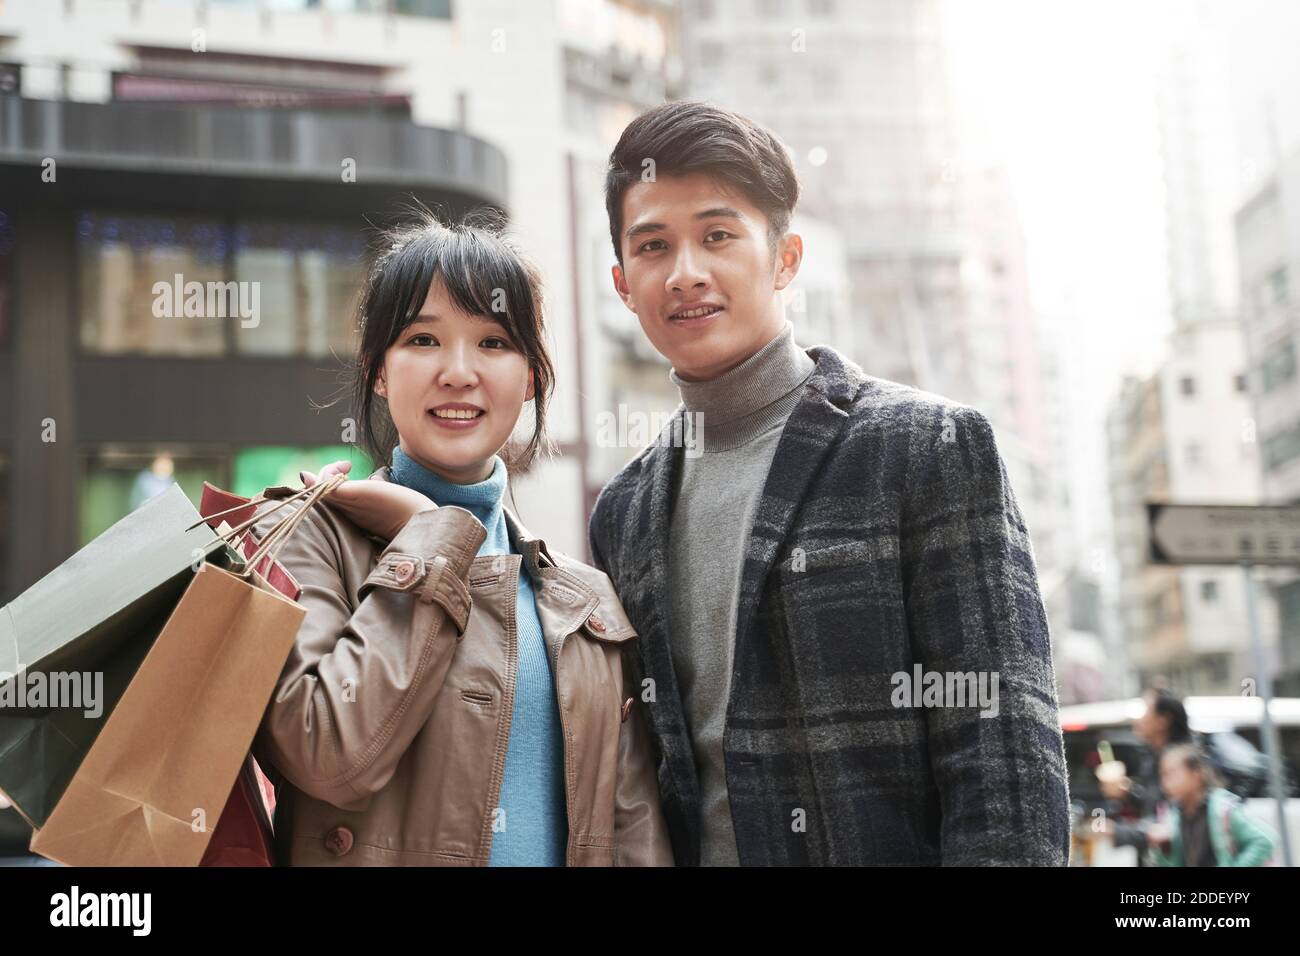 portrait en plein air d'un jeune couple asiatique heureux portant des sacs à provisions Banque D'Images